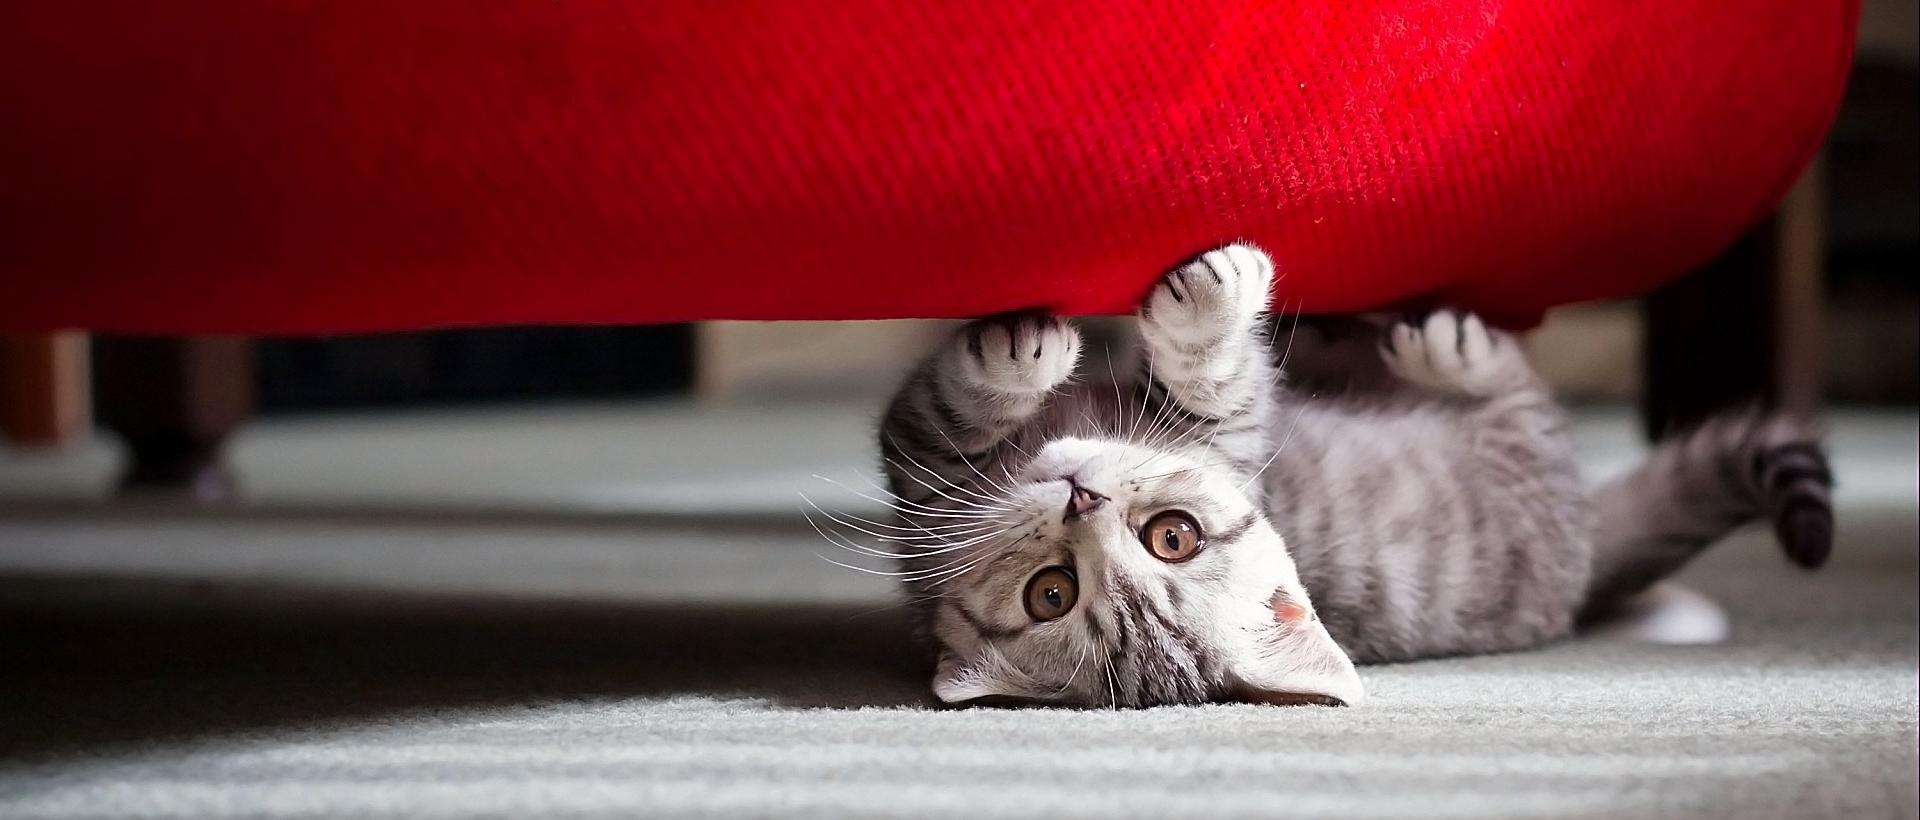 Как выбрать ткань для дивана, если у вас есть кошка?